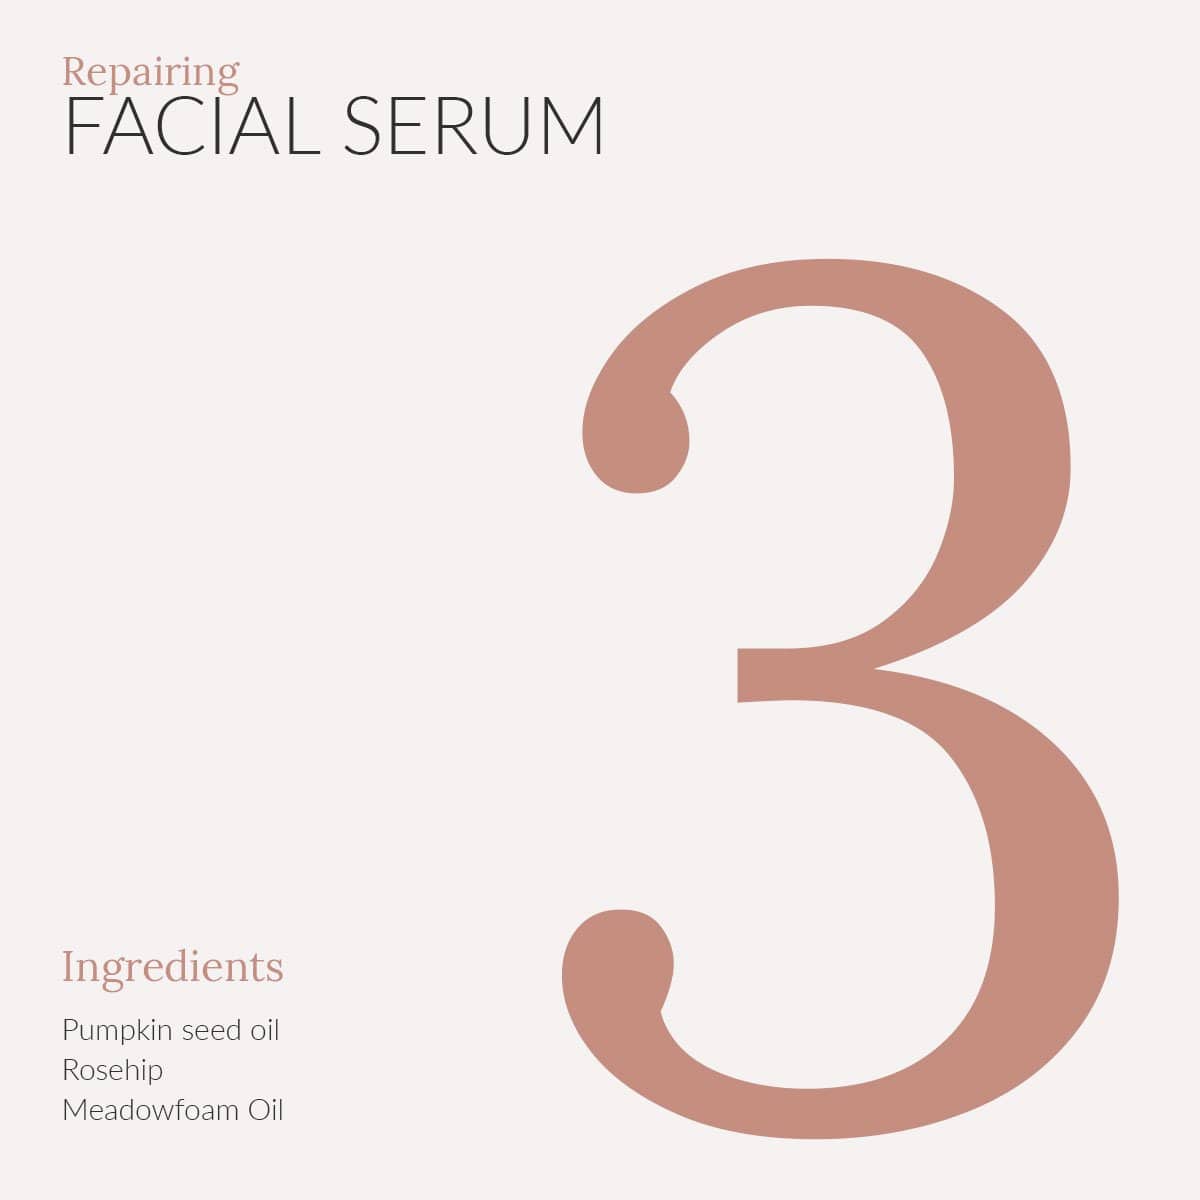 Repairing Facial Serum